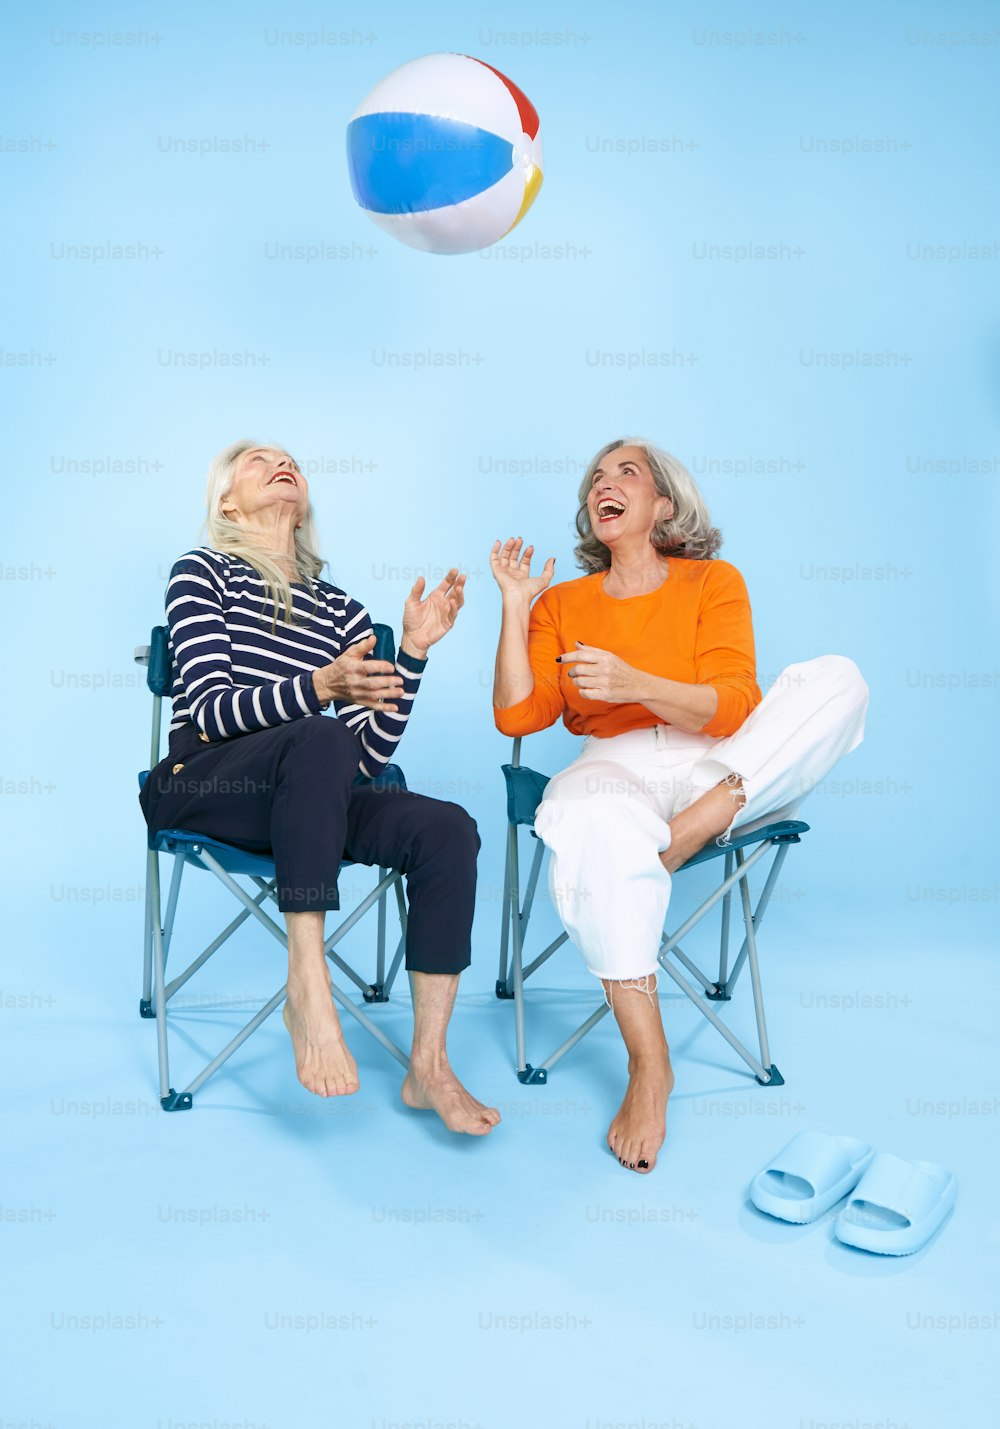 ビーチボールを空中に置いた椅子に座る2人の女性